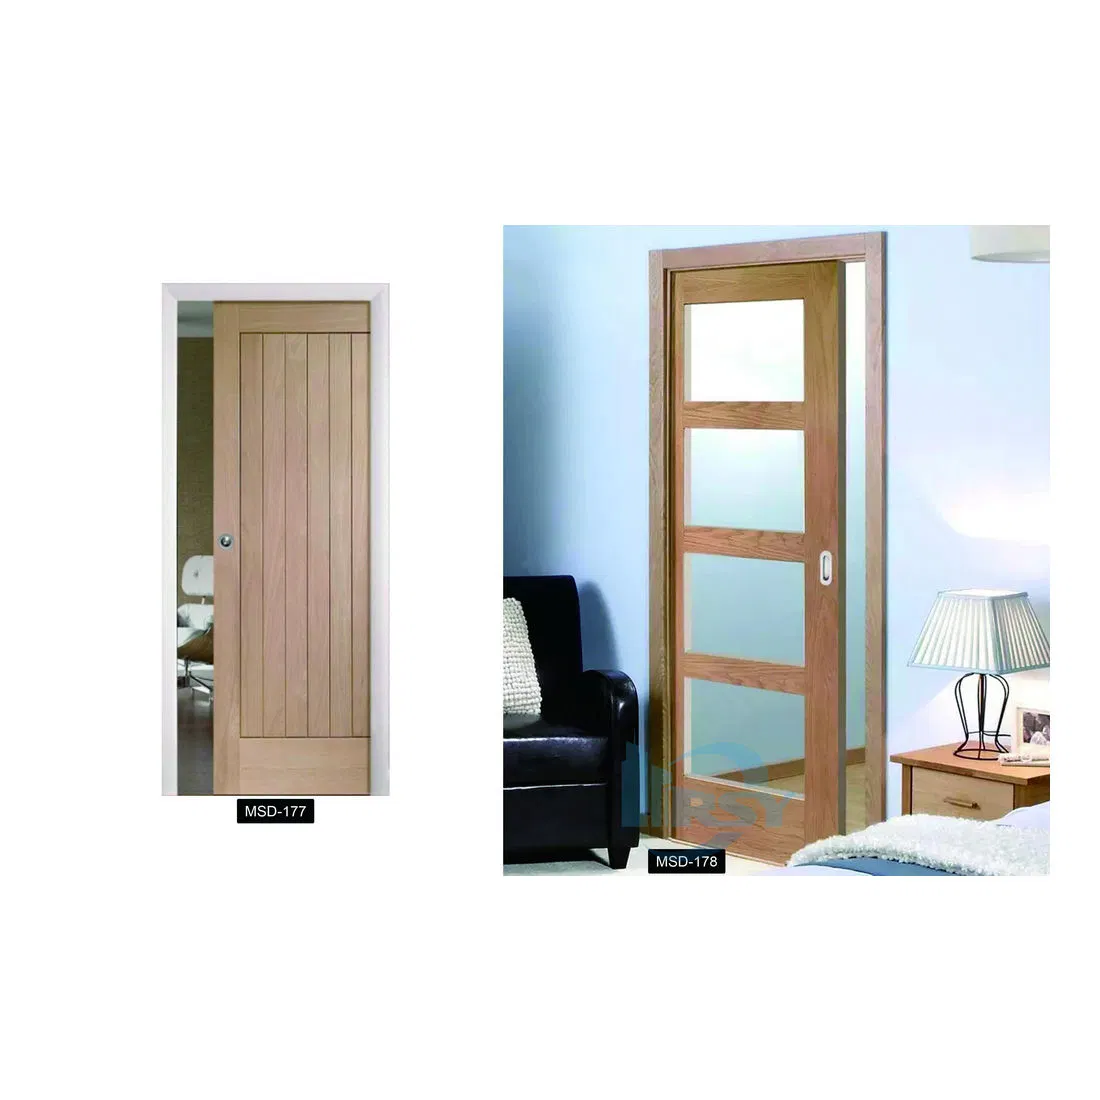 Interior Design Hospitality Interior Solid Wood Doors Painted Bathroom Wooden Pocket Door